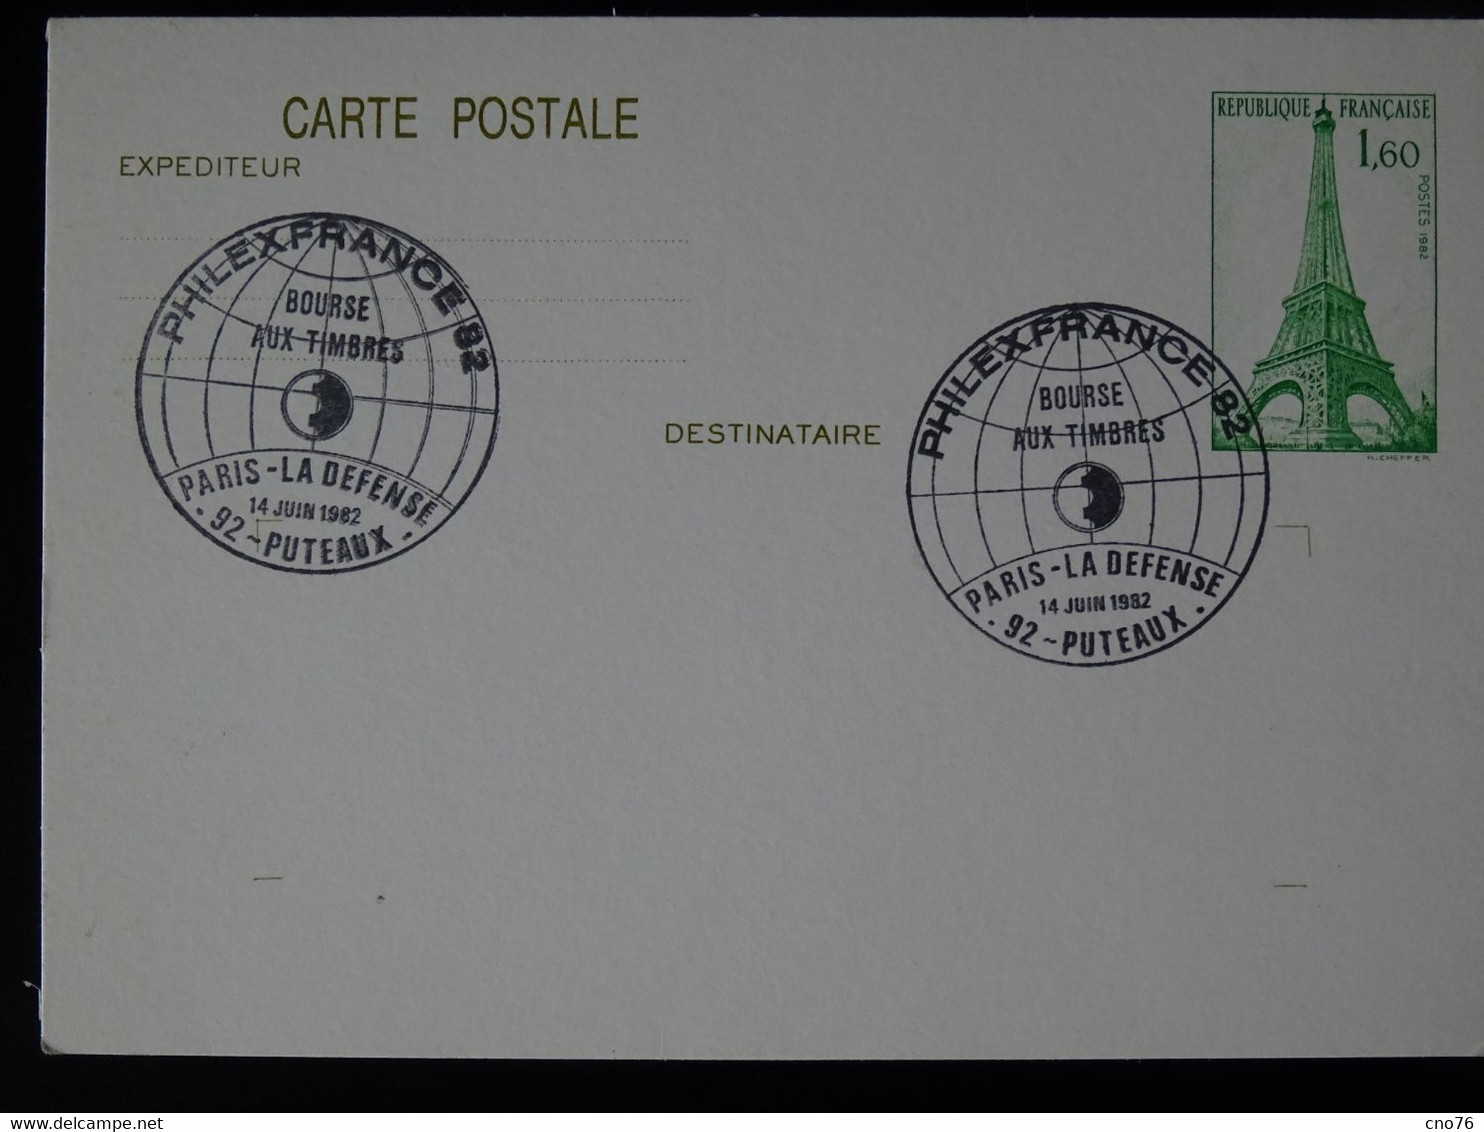 Ensemble De 4 Cartes Postales Prêt à Poster (JUVA ROUEN 76, Philex France 82...) - Colecciones & Series: PAP